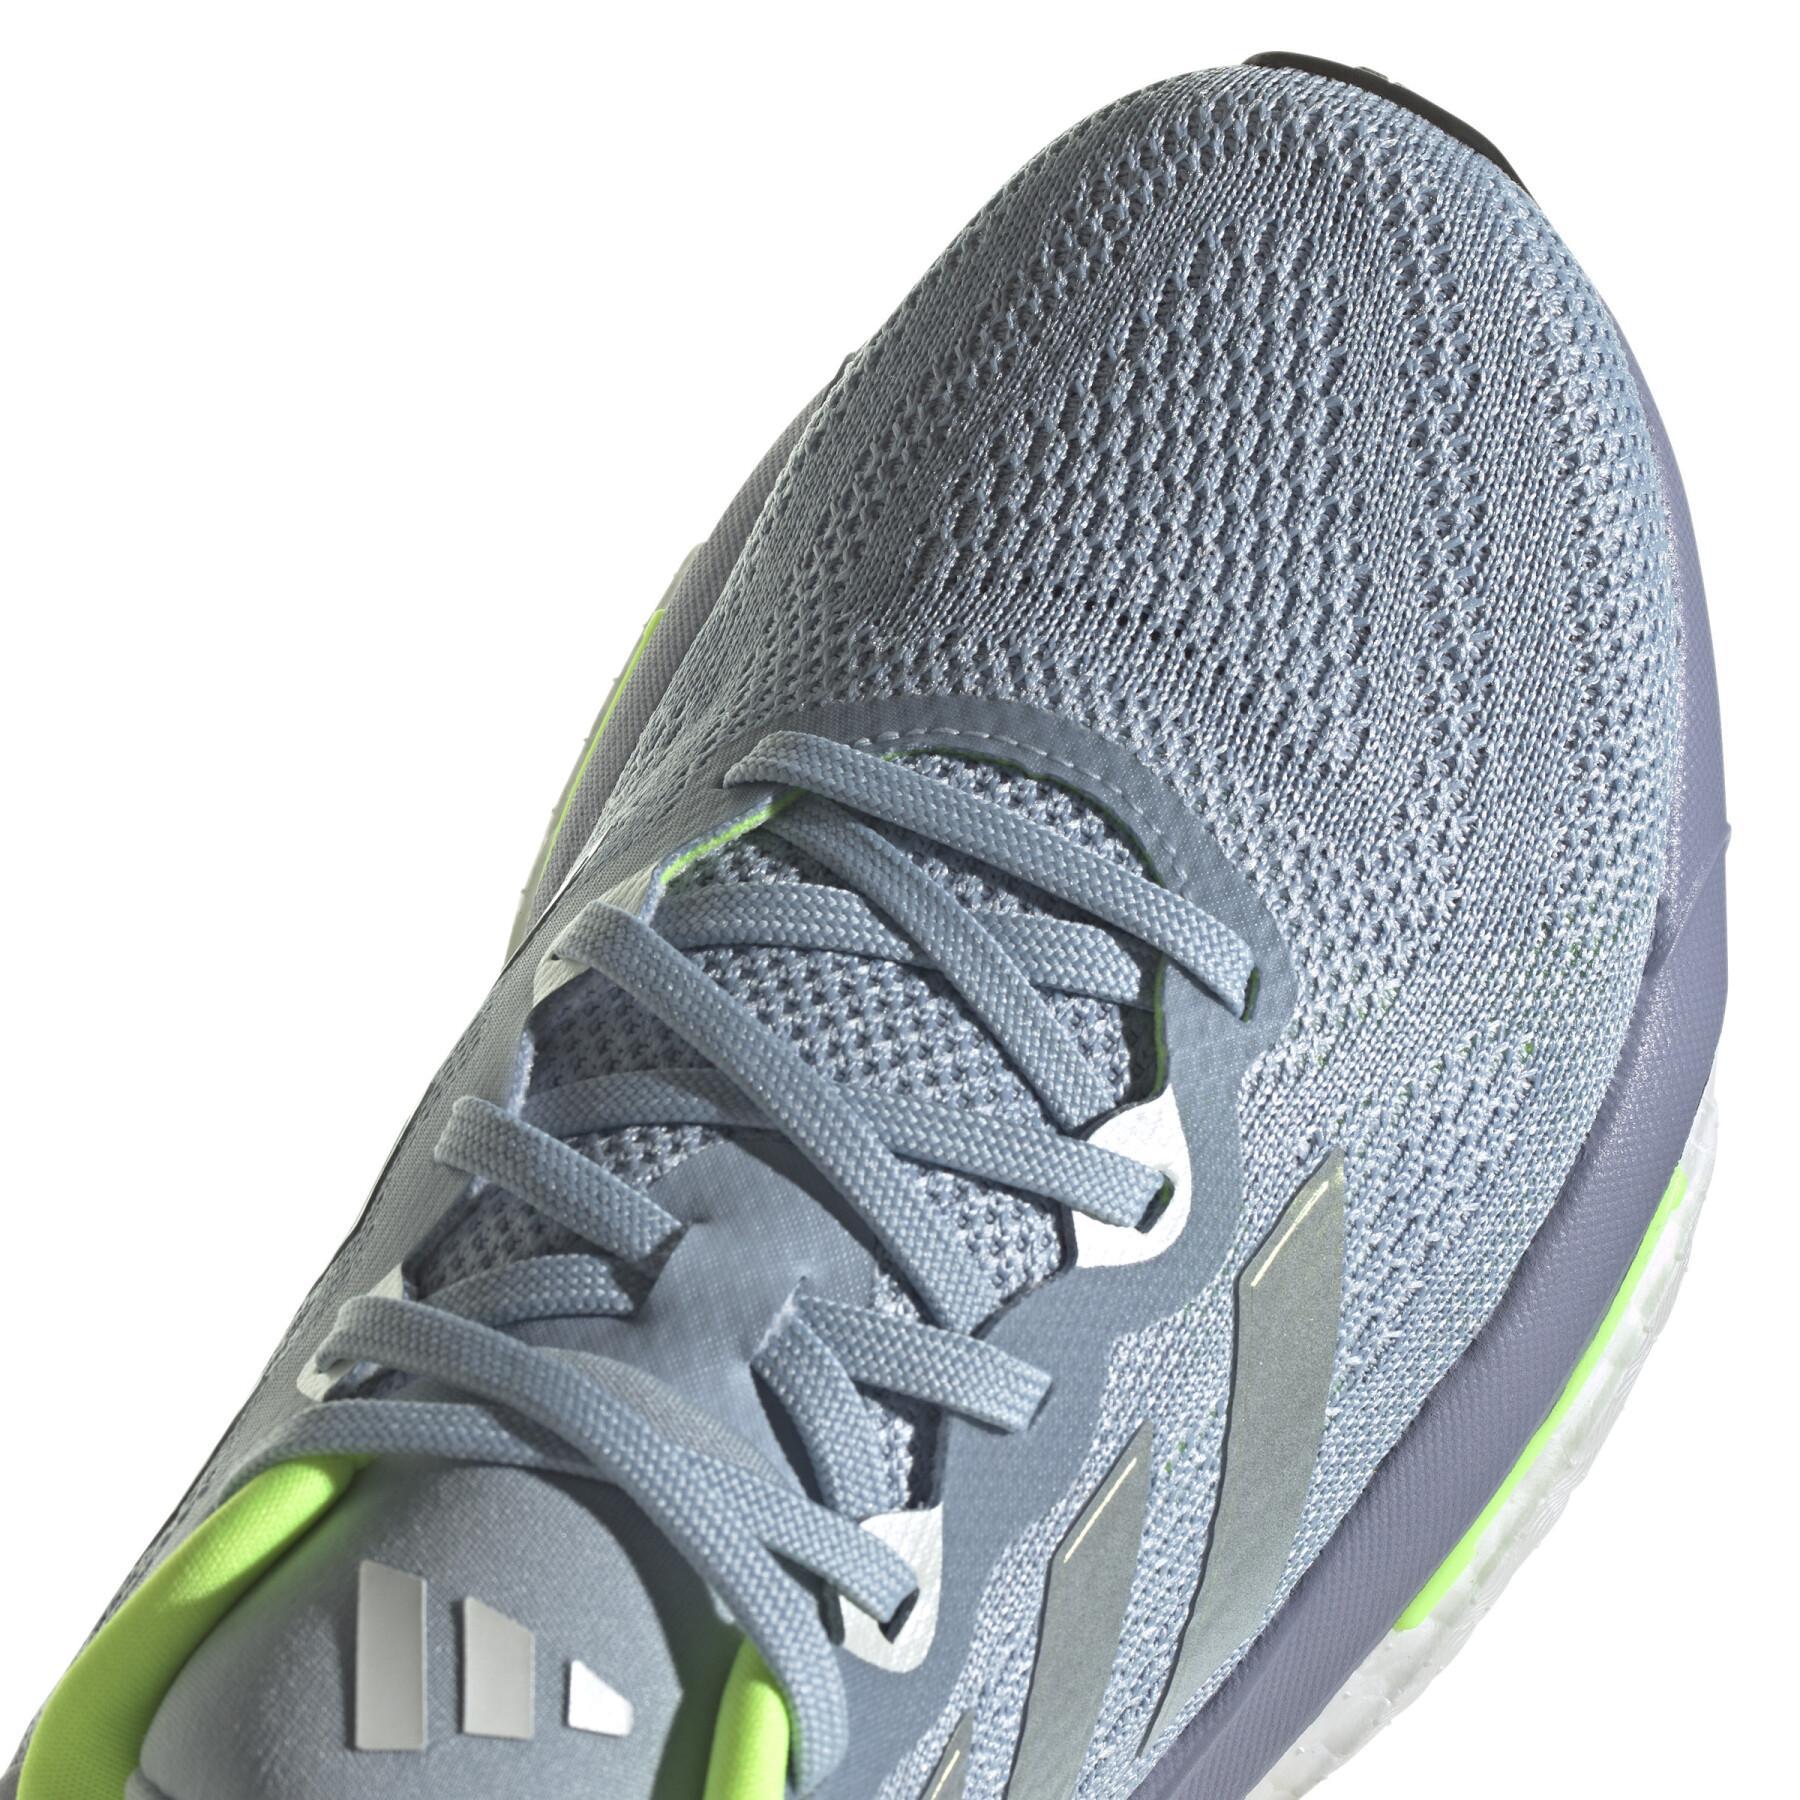 Chaussures de running femme adidas SolarGlide 6